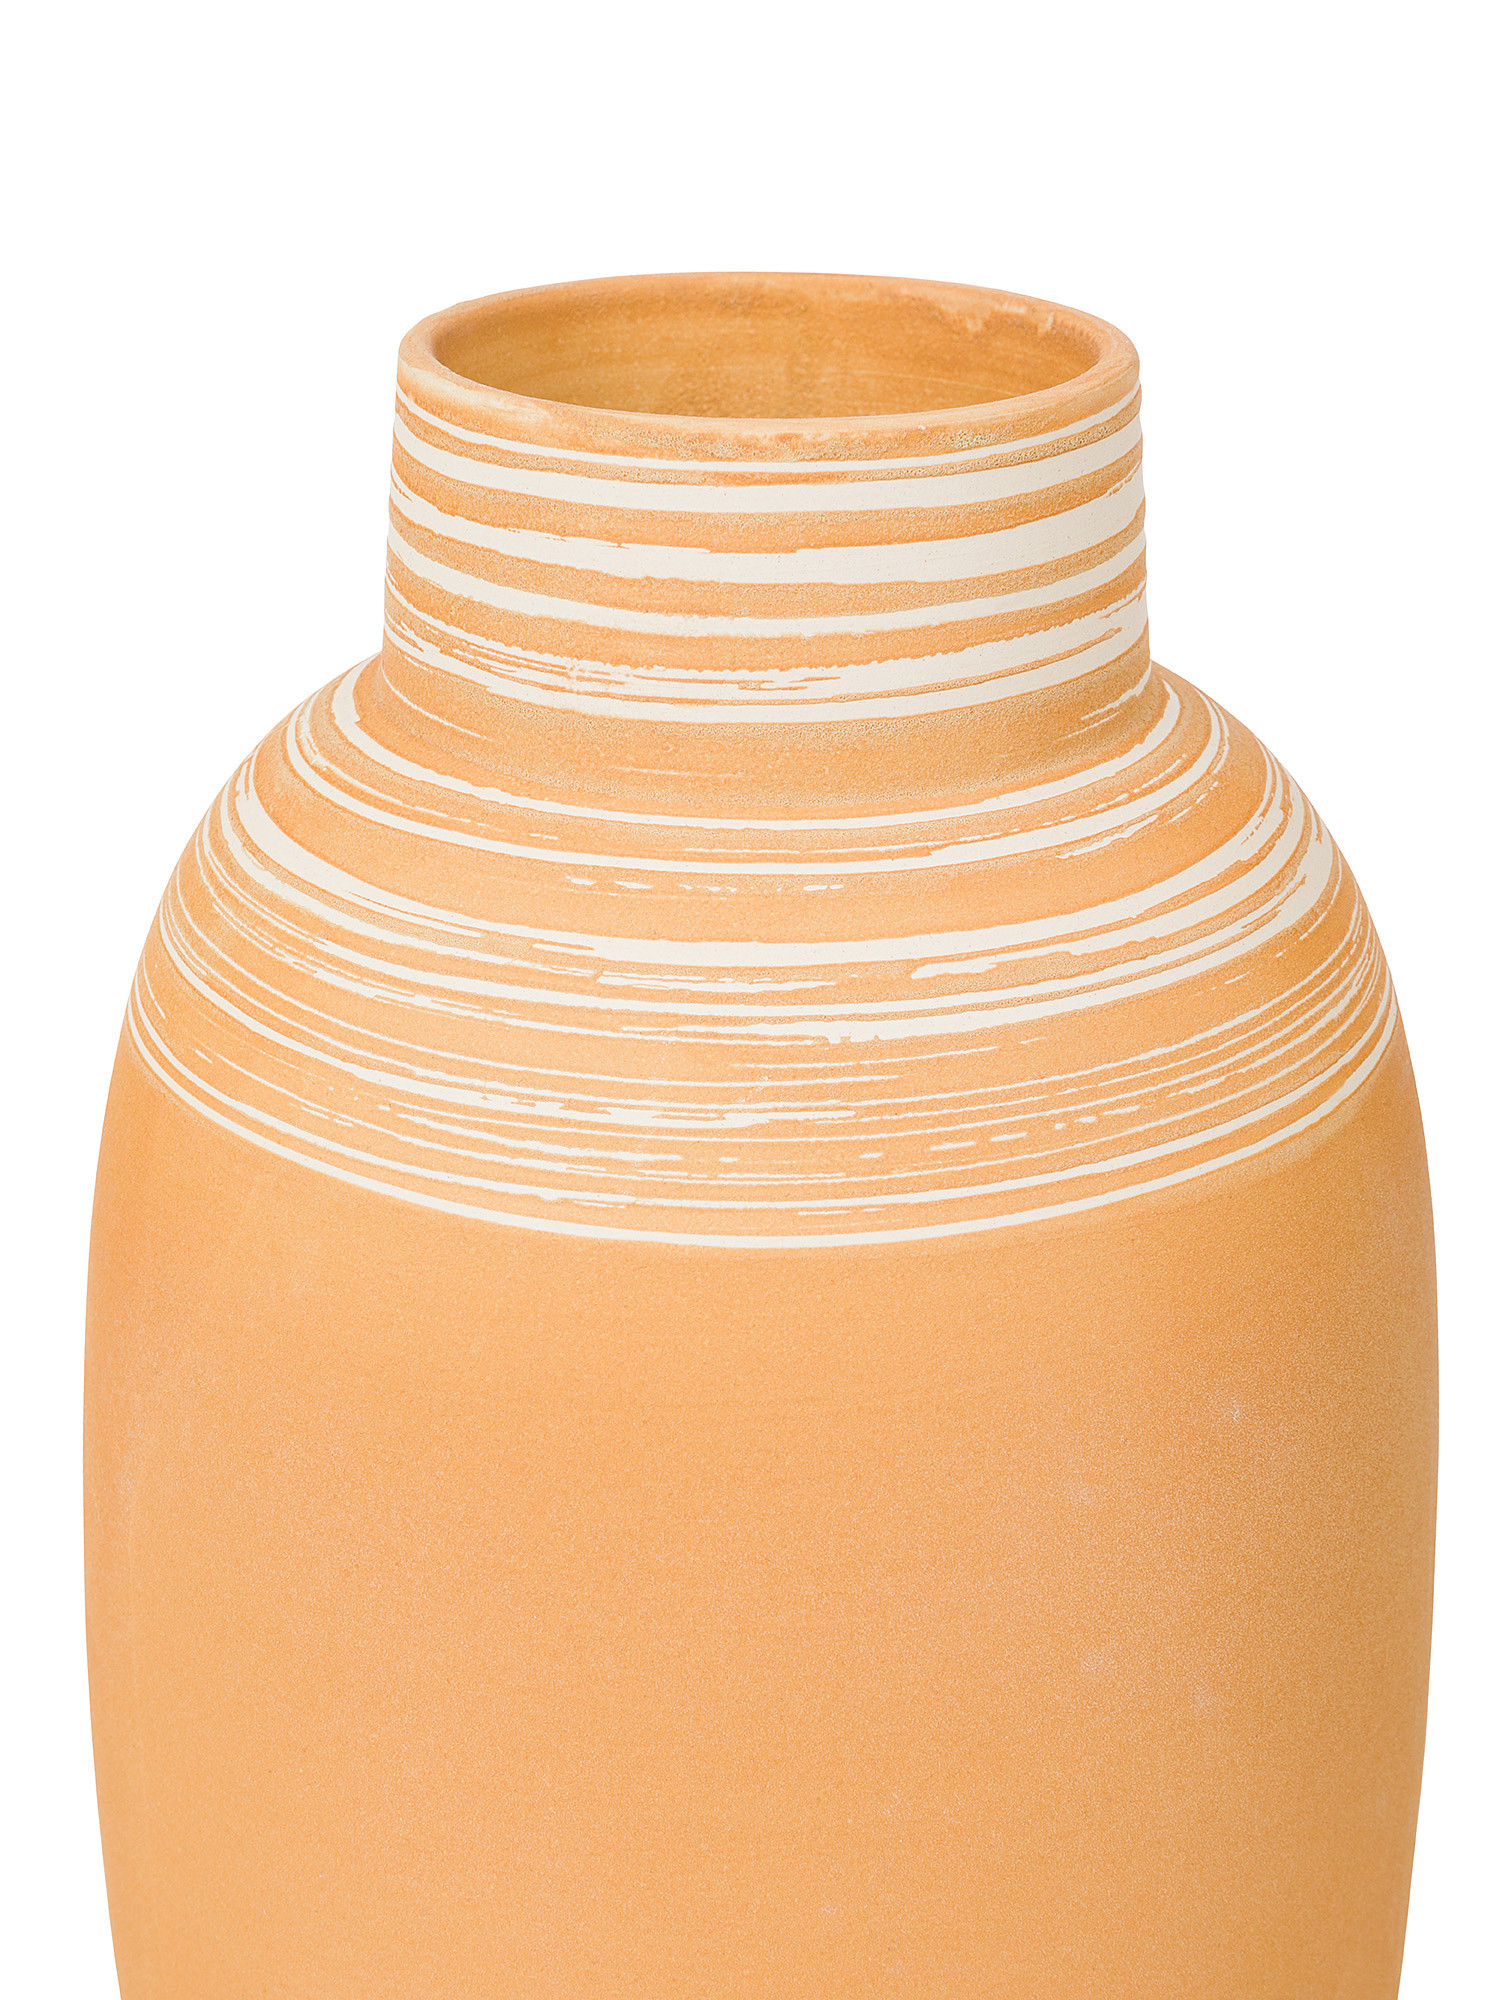 Vaso in ceramica portoghese, Arancione chiaro, large image number 1